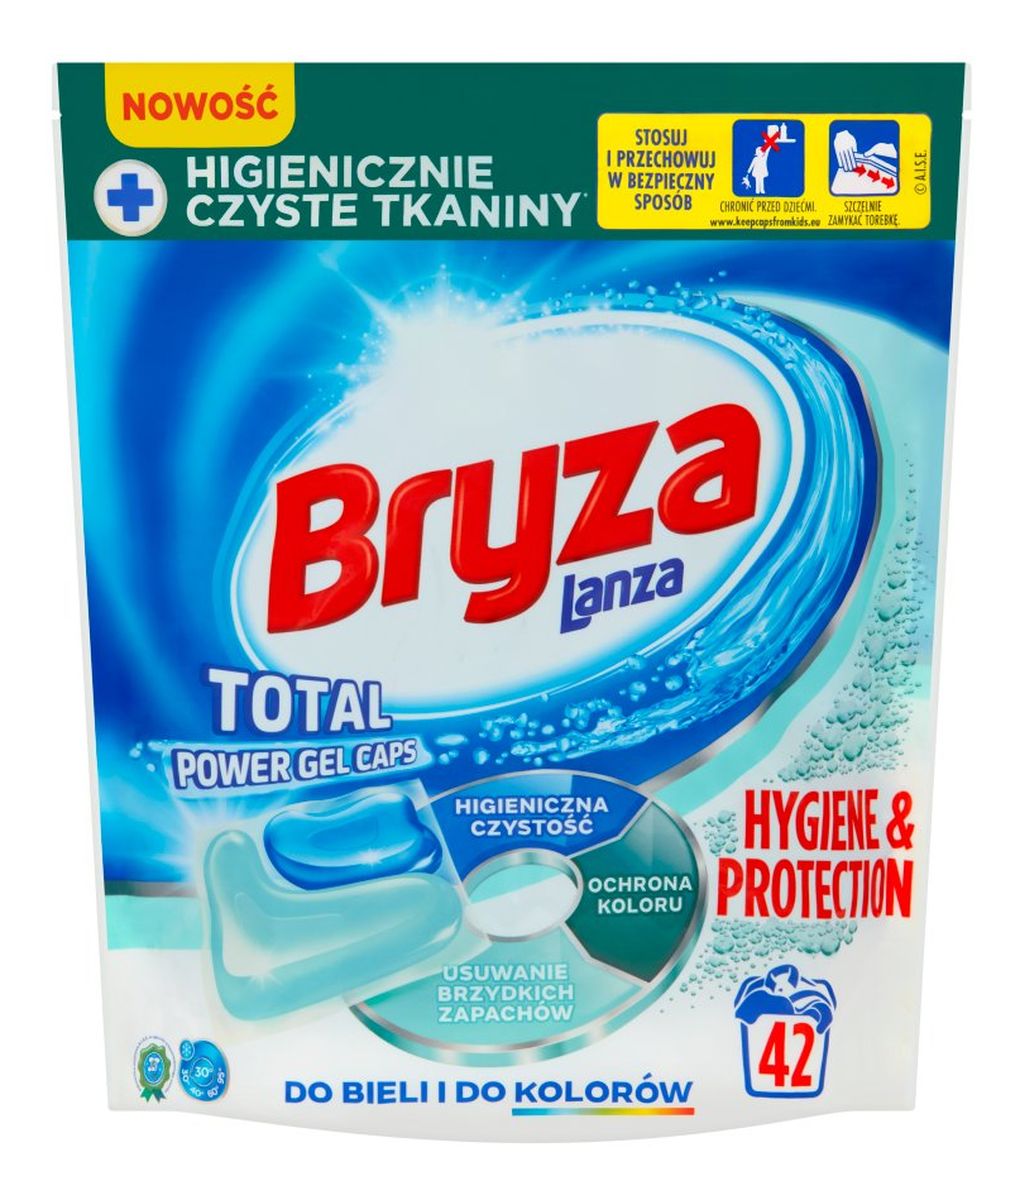 Hygiene&Protection Kapsułki do prania do bieli i kolorów 42szt